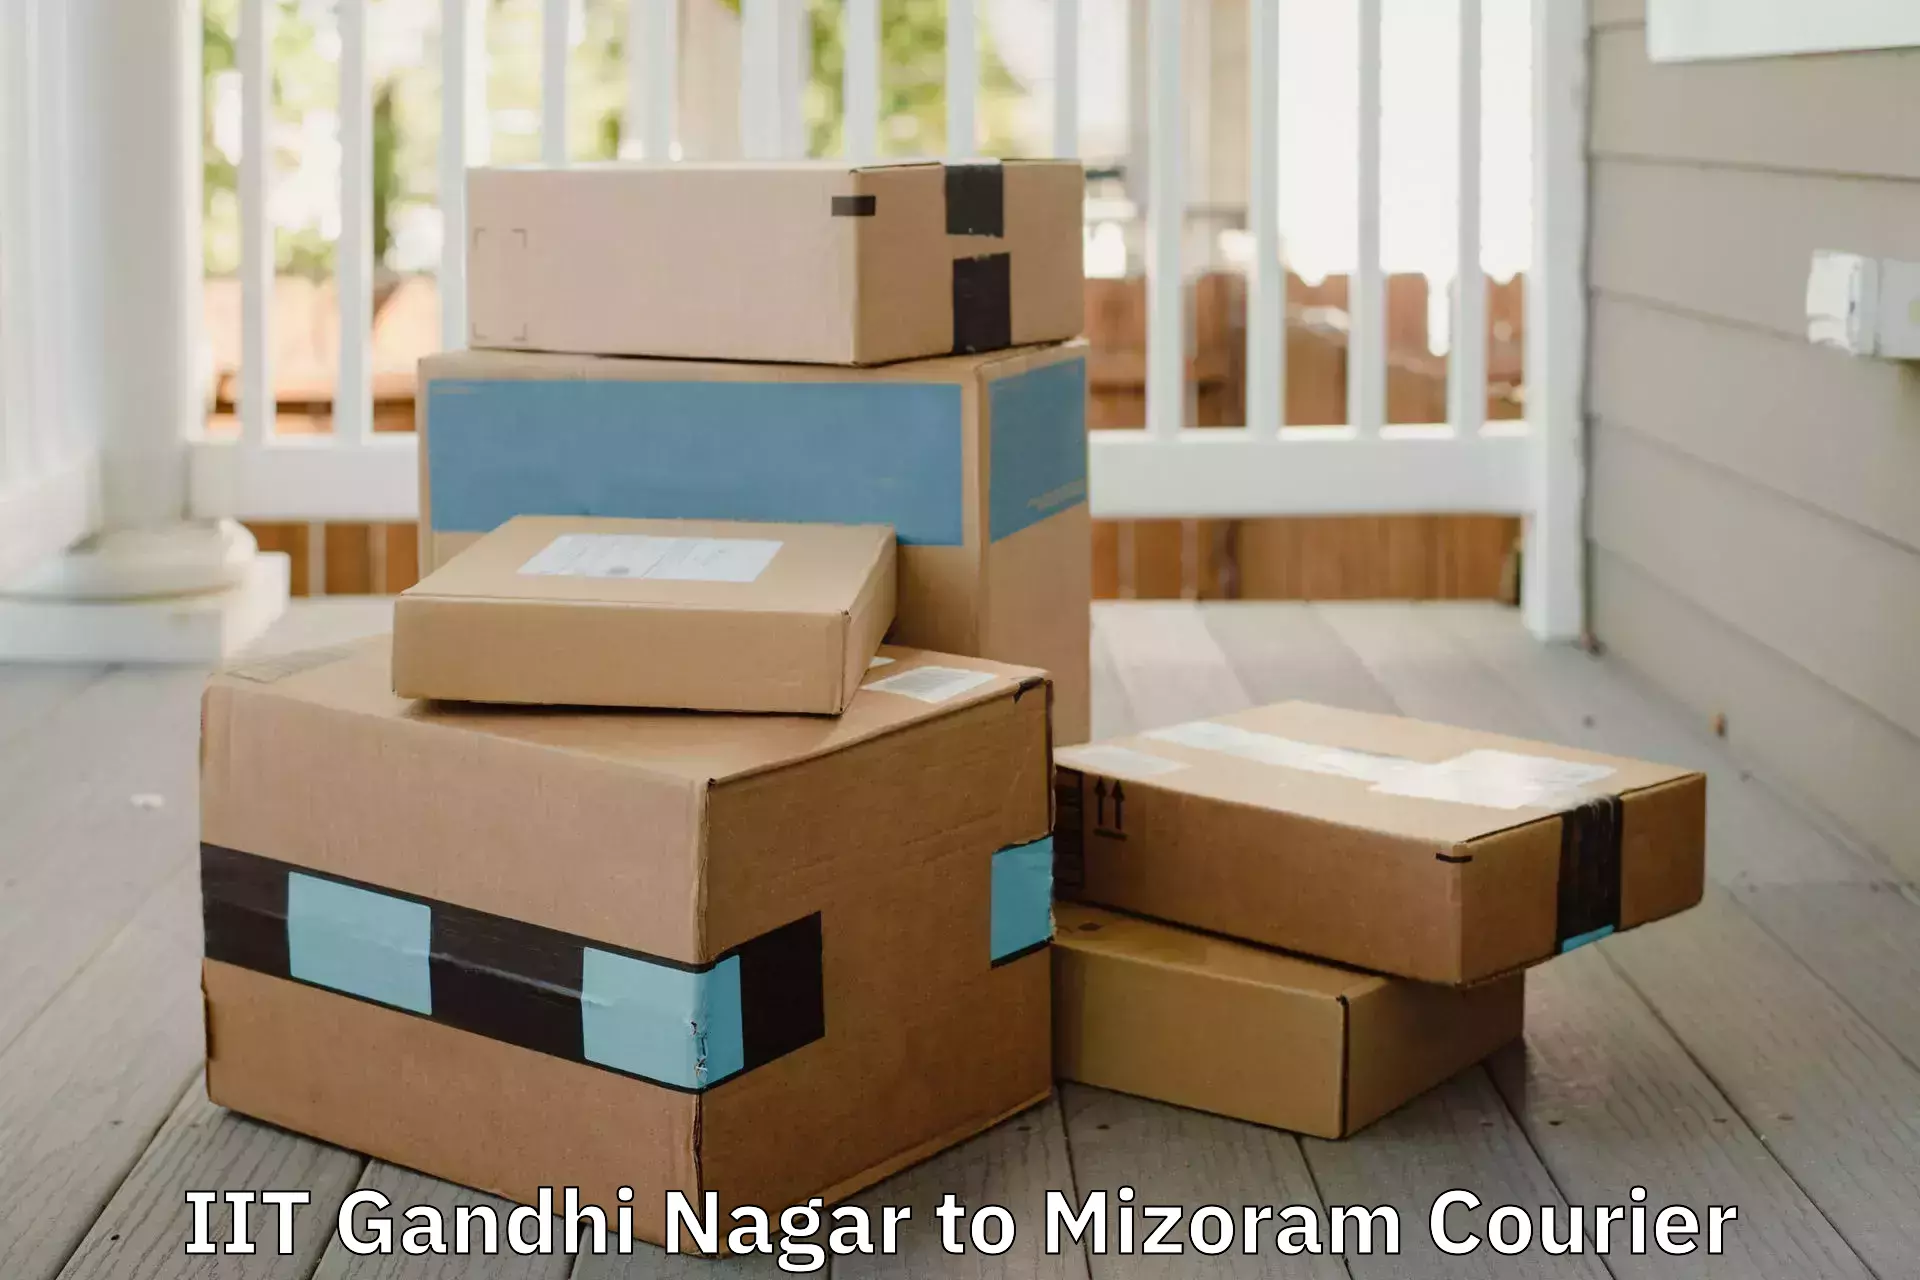 Expert goods movers IIT Gandhi Nagar to Darlawn